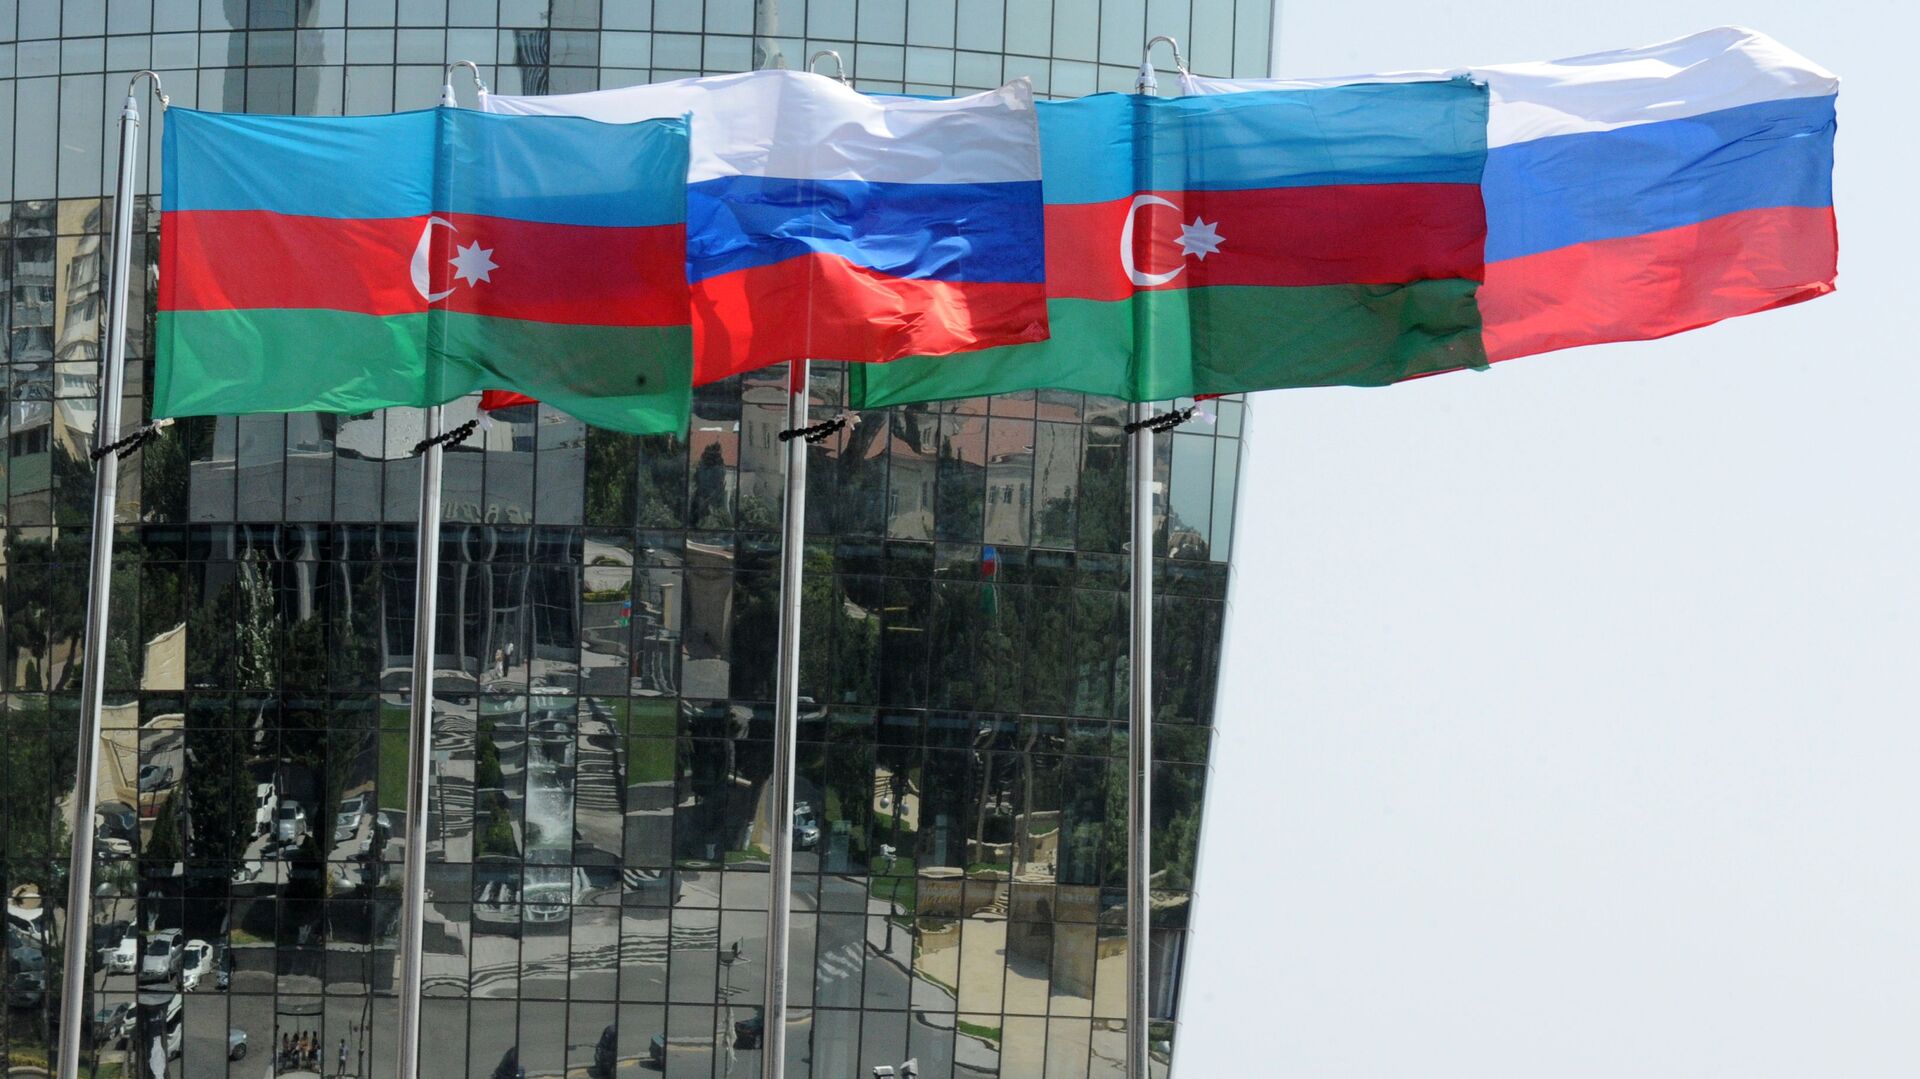 Национальные флаги России и Азербайджана на фоне фасада одной из башен Башни Пламени (Flame Towers) в Баку - Sputnik Азербайджан, 1920, 25.03.2021